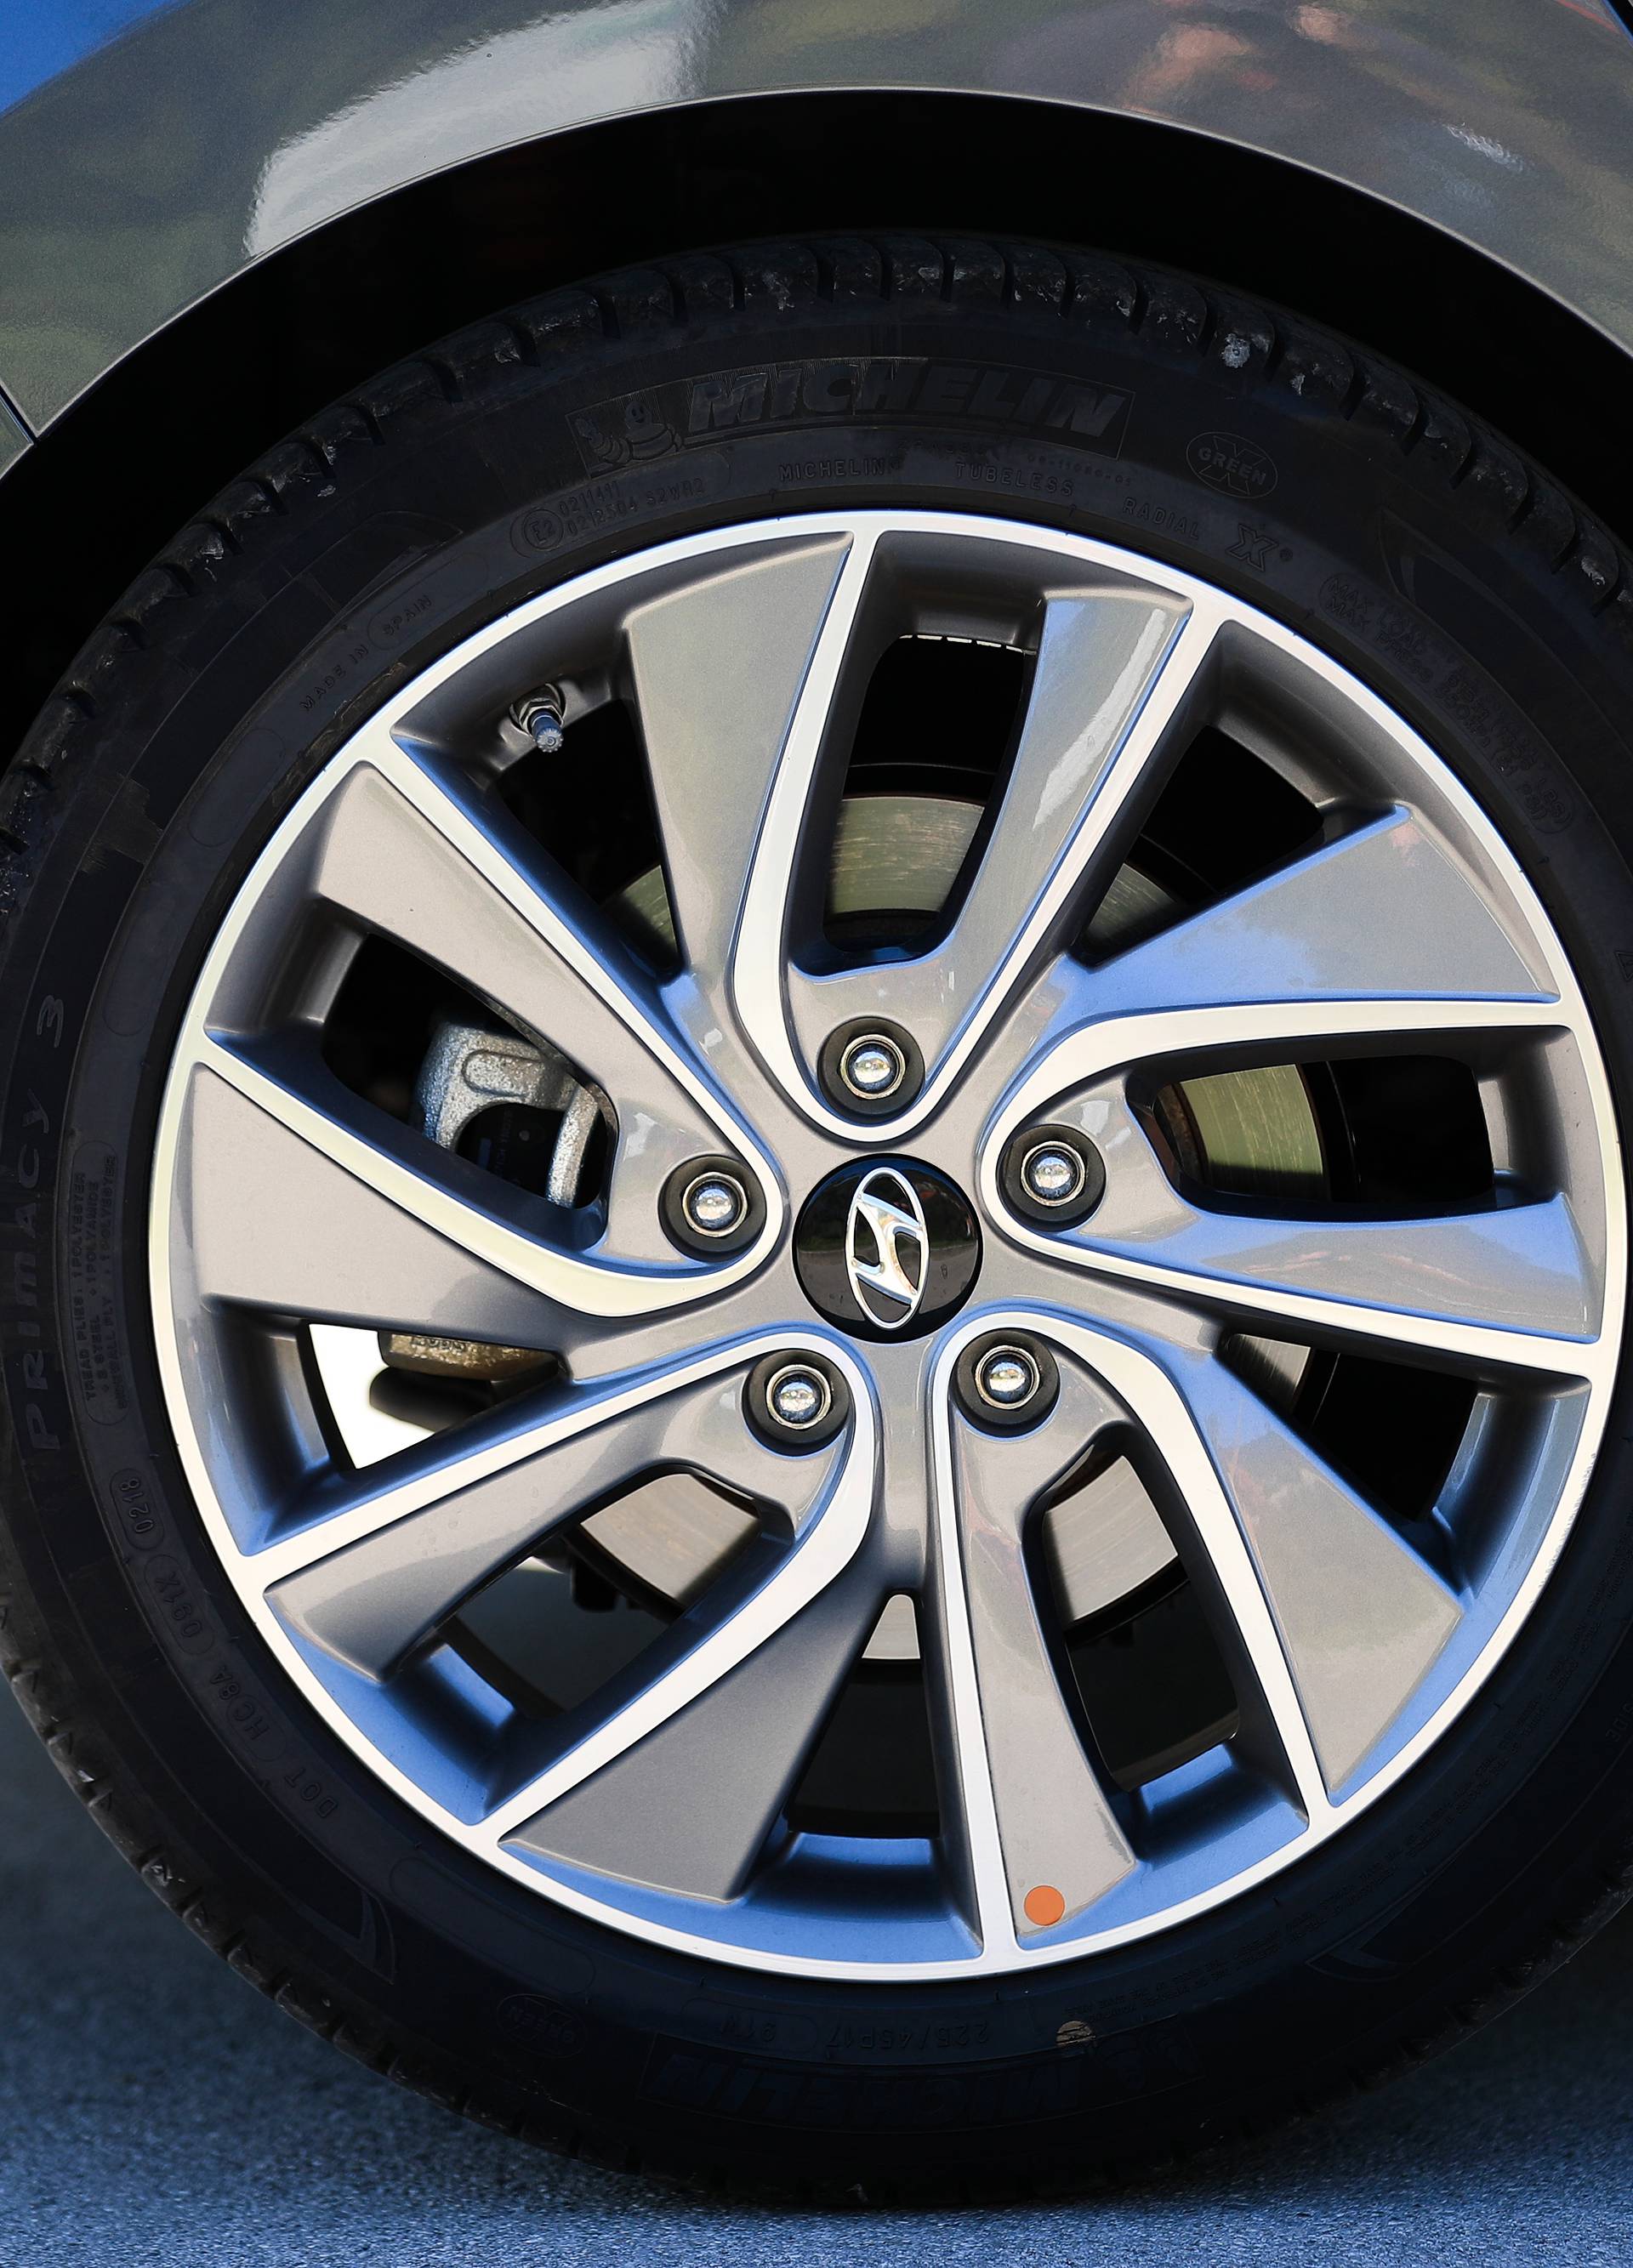 Hyundaijev hrabar i uspješan potez: i30 Fastback na testu